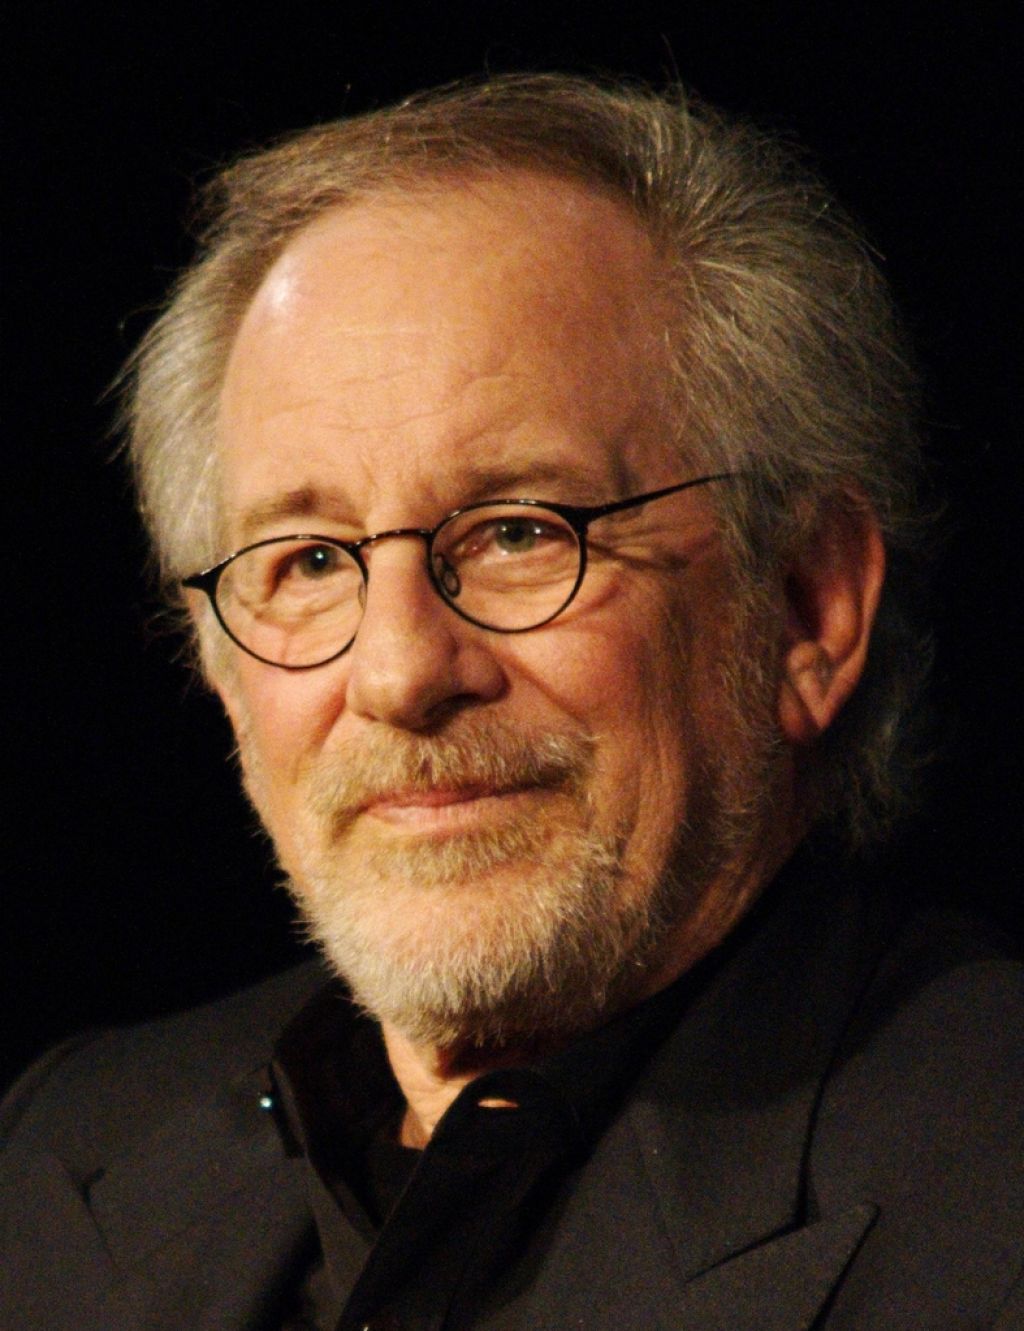 Svet so ljudje: Spielbergu medalja predsednika ZDA